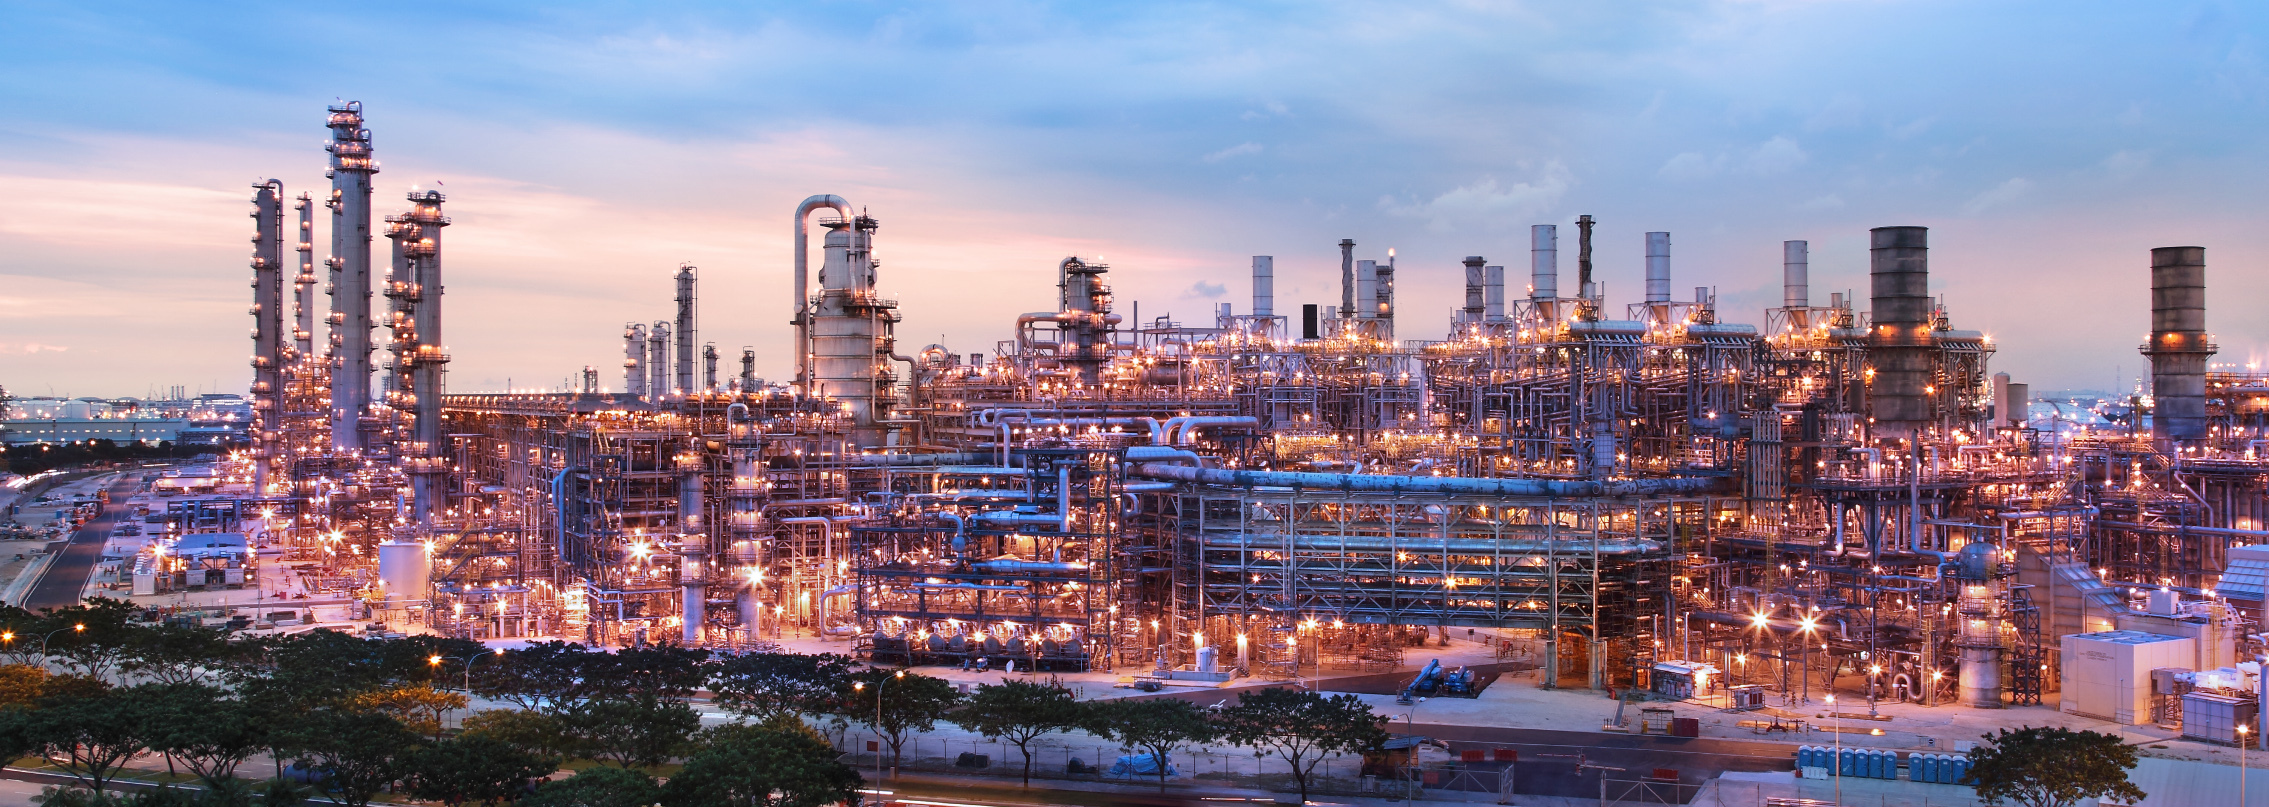 Француз завод. Сингапурский нефтеперерабатывающий завод. Сингапур нефтепереработка. Промышленная зона Сингапура Джуронг. Химическая промышленность в Сингапуре.